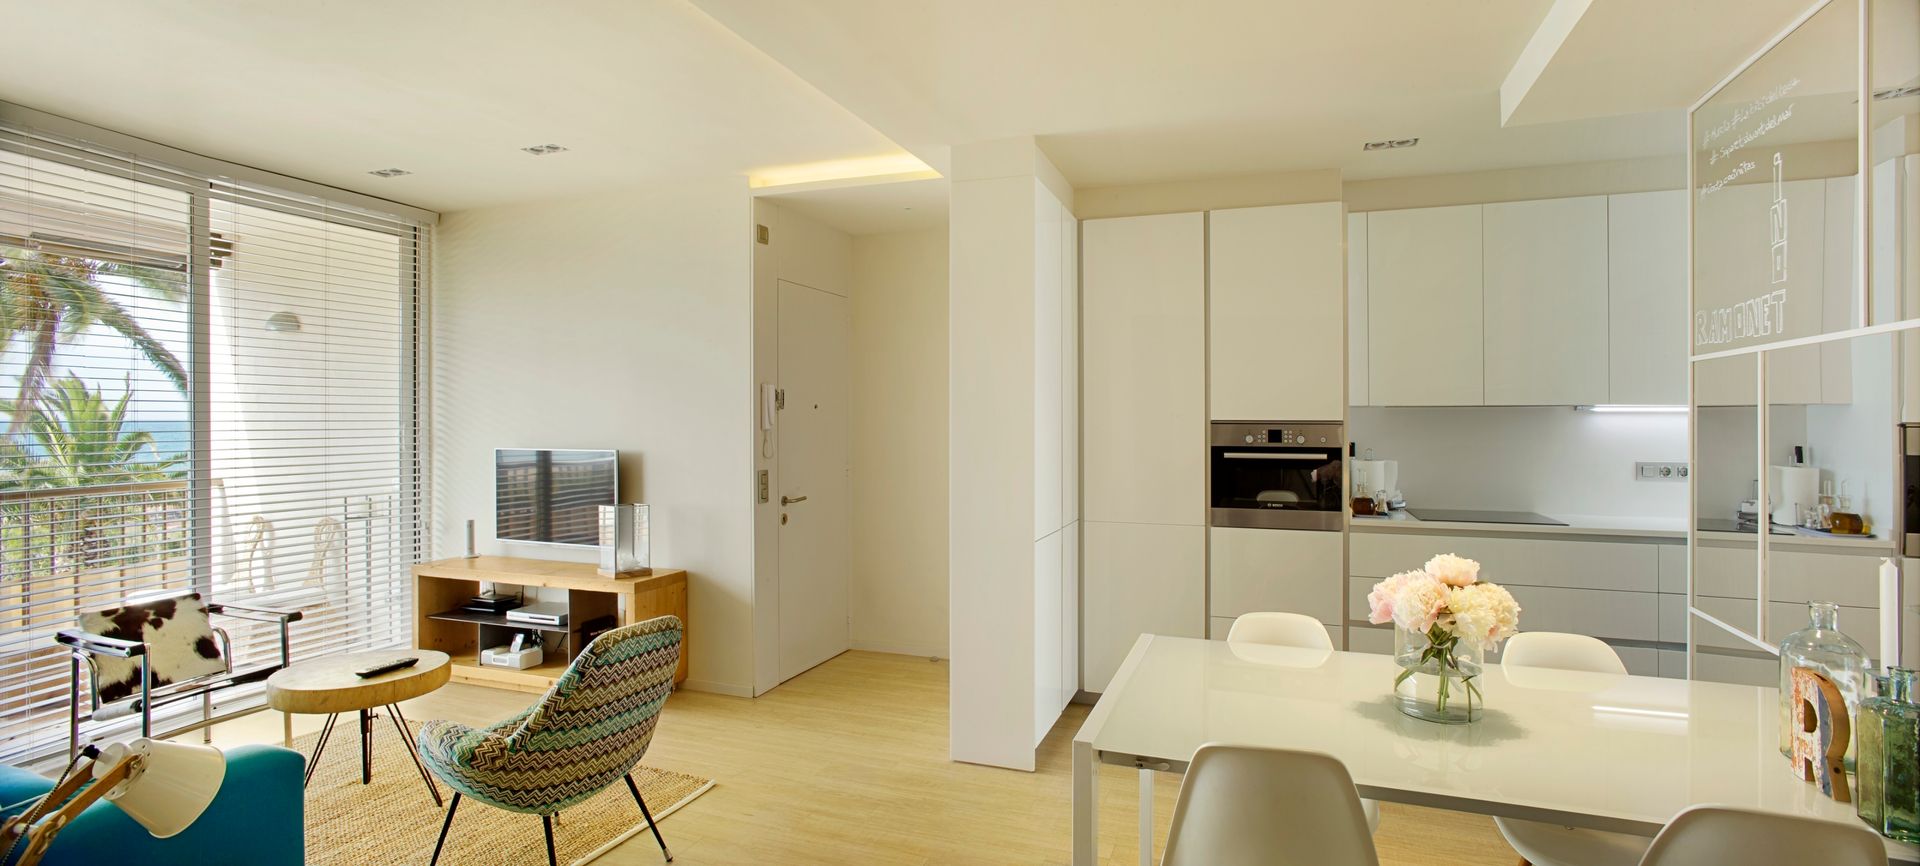 Apartamento CT, costa+dos costa+dos Scandinavian style kitchen